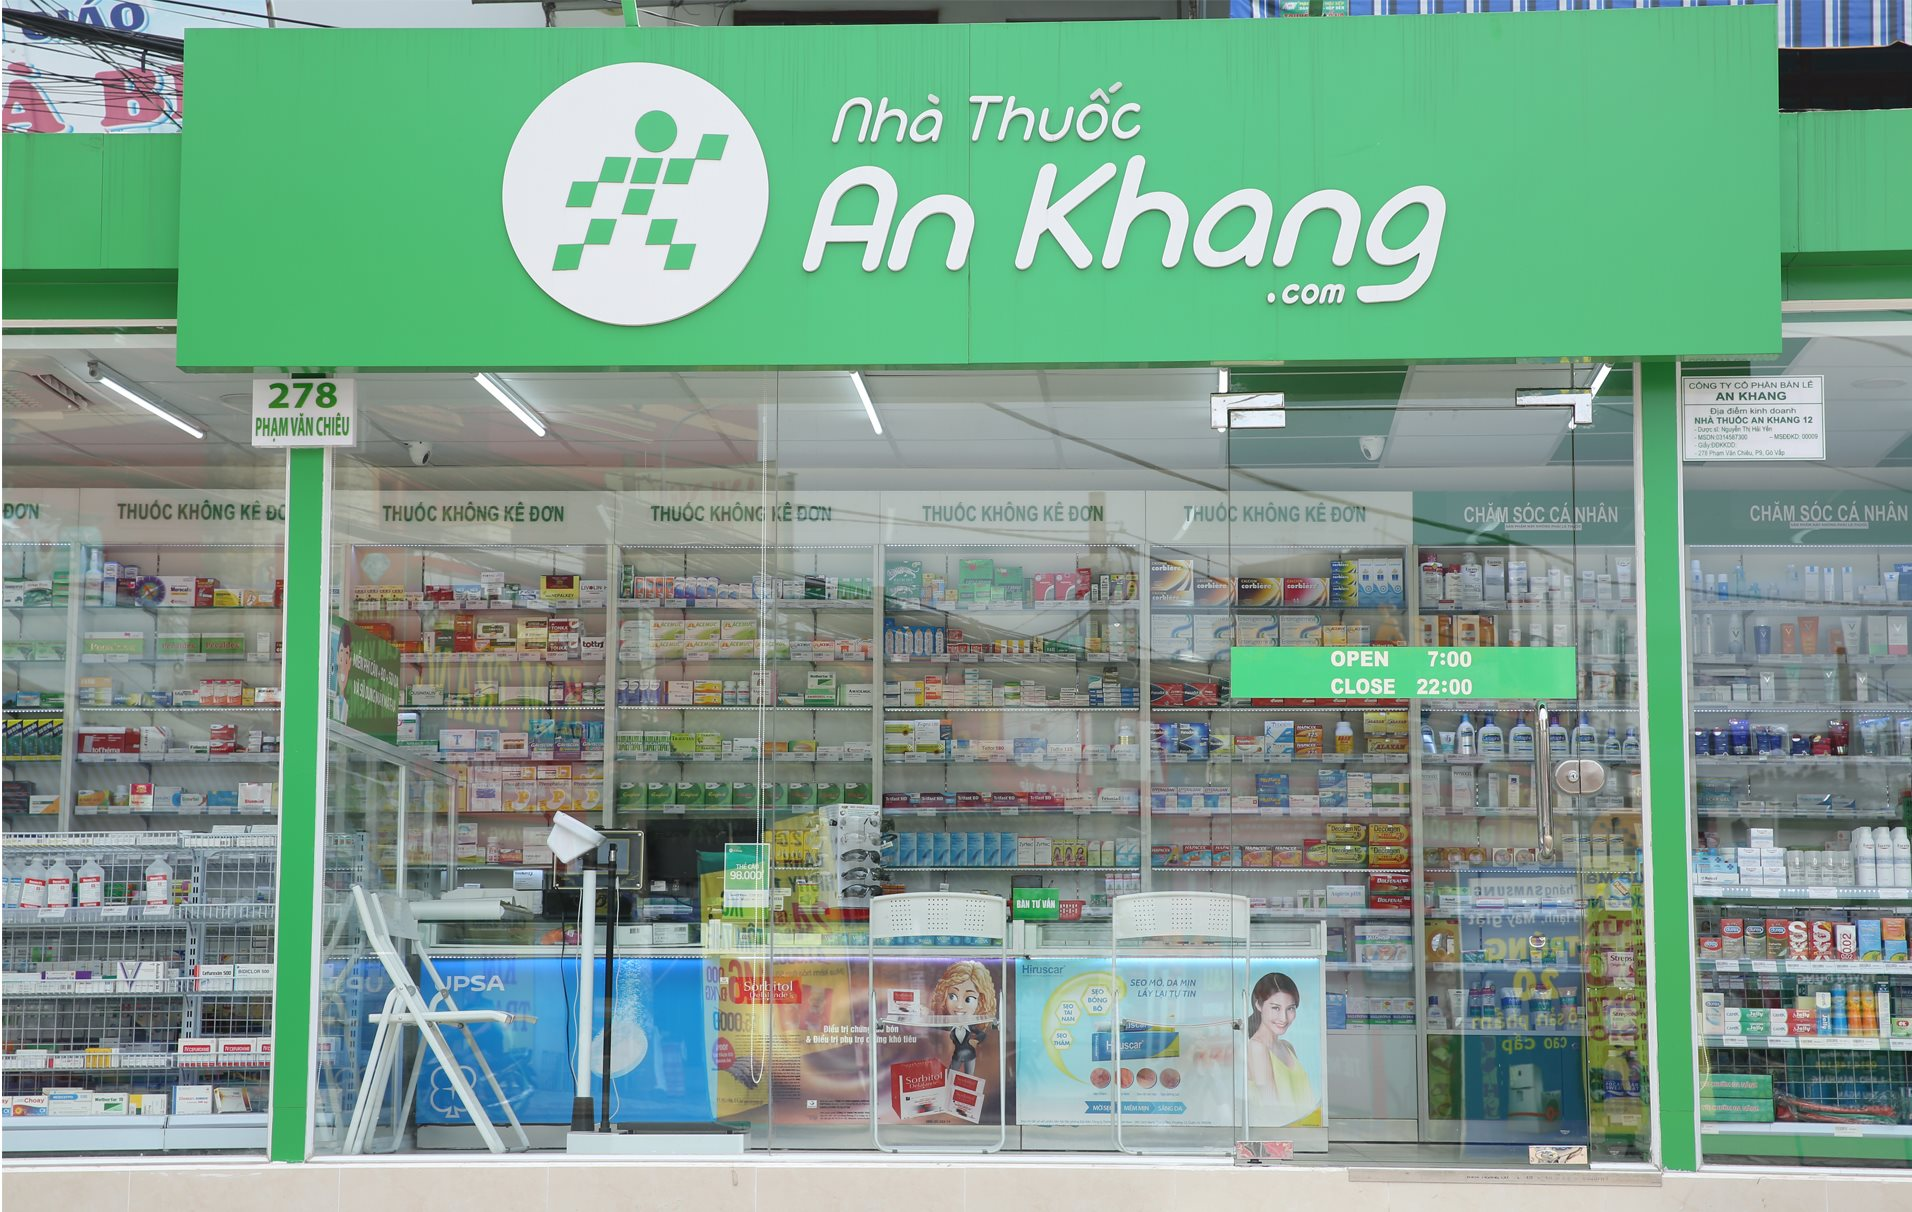 Chuỗi nhà thuốc An Khang gánh khoản lỗ lũy kế gần 500 tỷ đồng, tạm ngưng chiến lược gia tăng cửa hàng, ngày càng &quot;hụt hơi&quot; trước Long Châu - Ảnh 1.